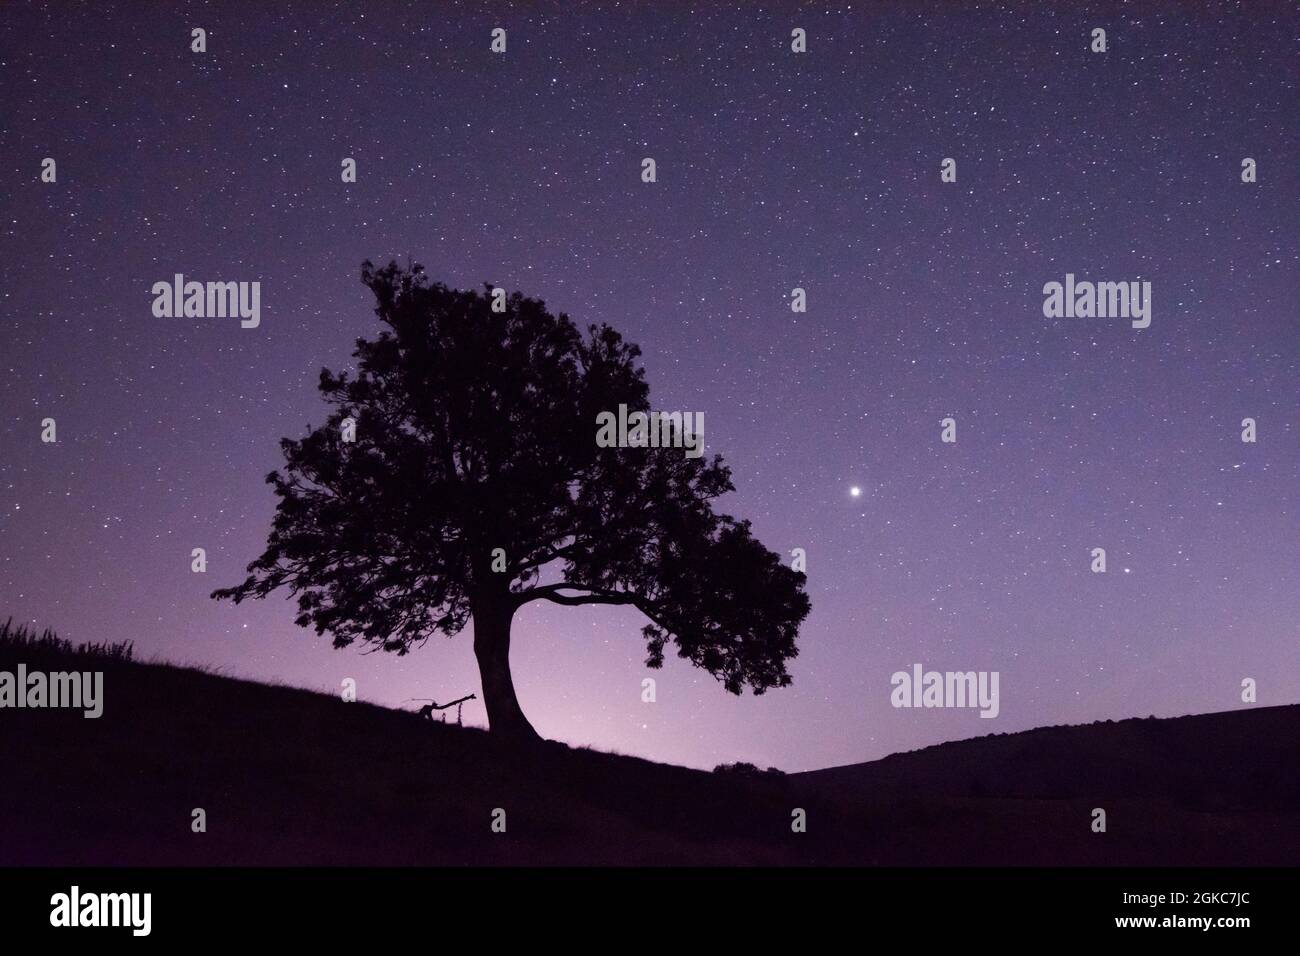 Stelle e pianeti Giove e Saturno accanto alla silhouette dell'albero, Giove luminoso a destra dell'albero, Saturno più a destra e più in basso, Sussex, UK Foto Stock